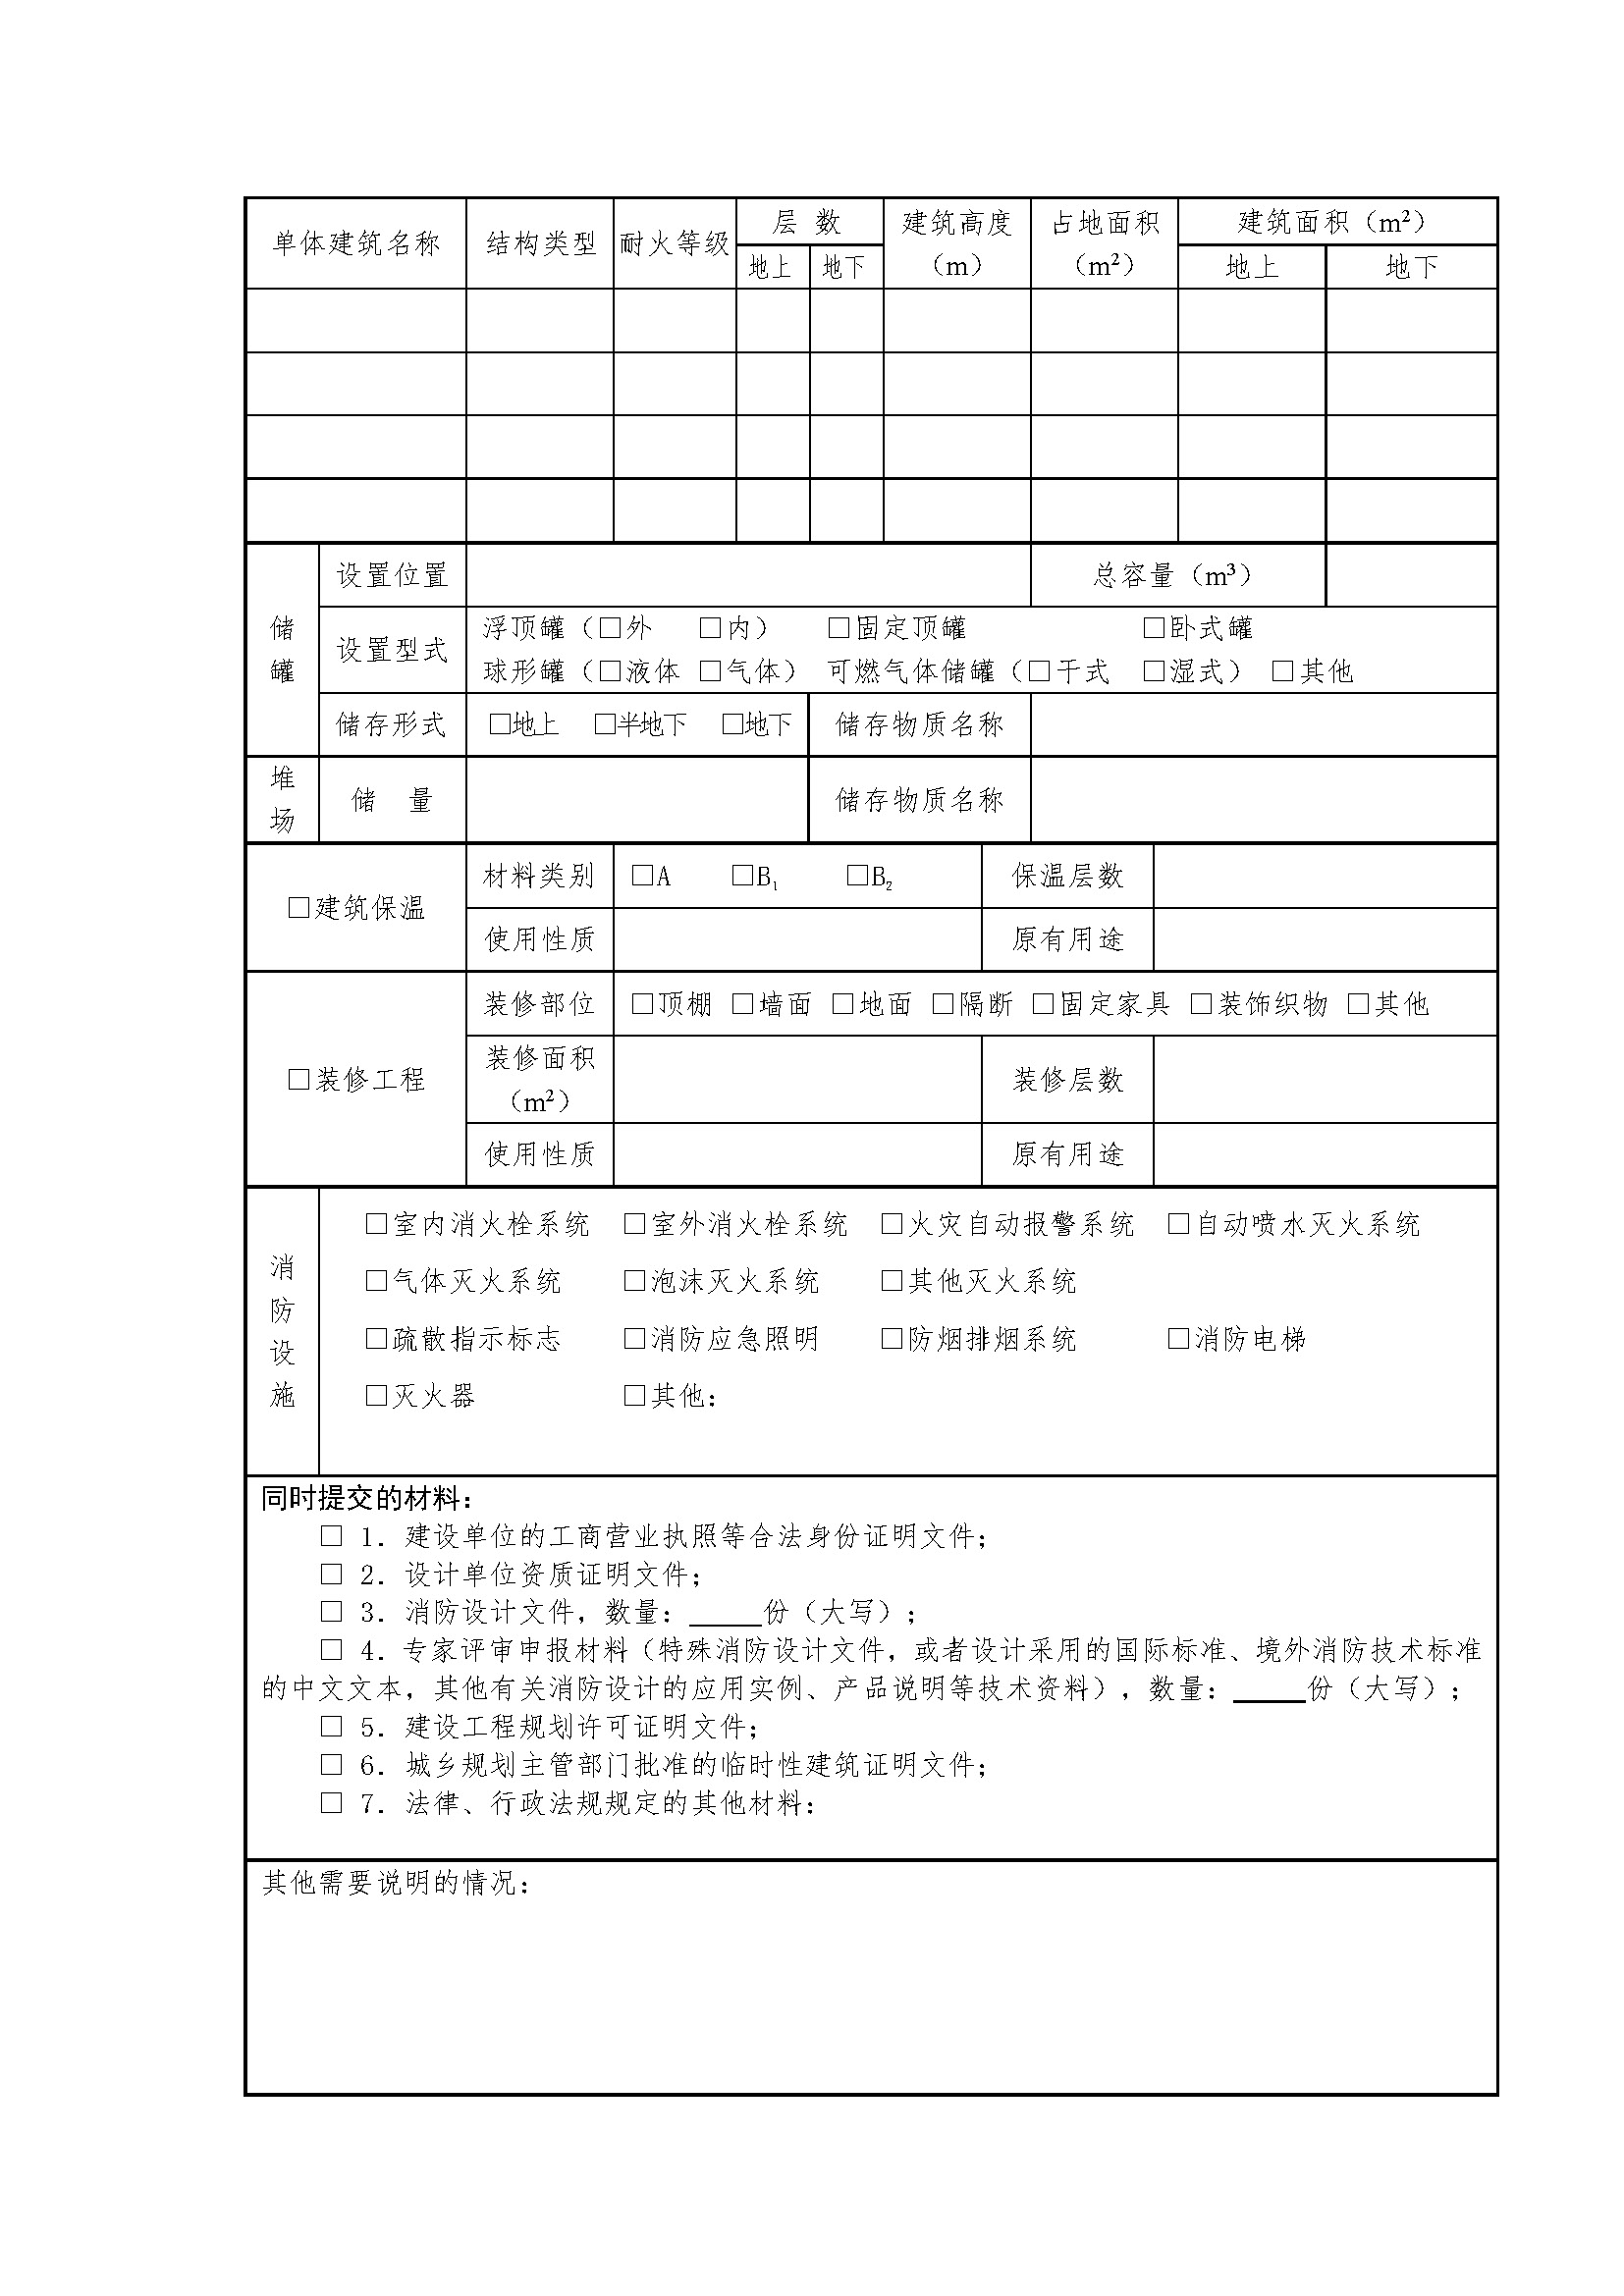 上海办公室设计装修消防报审备案表